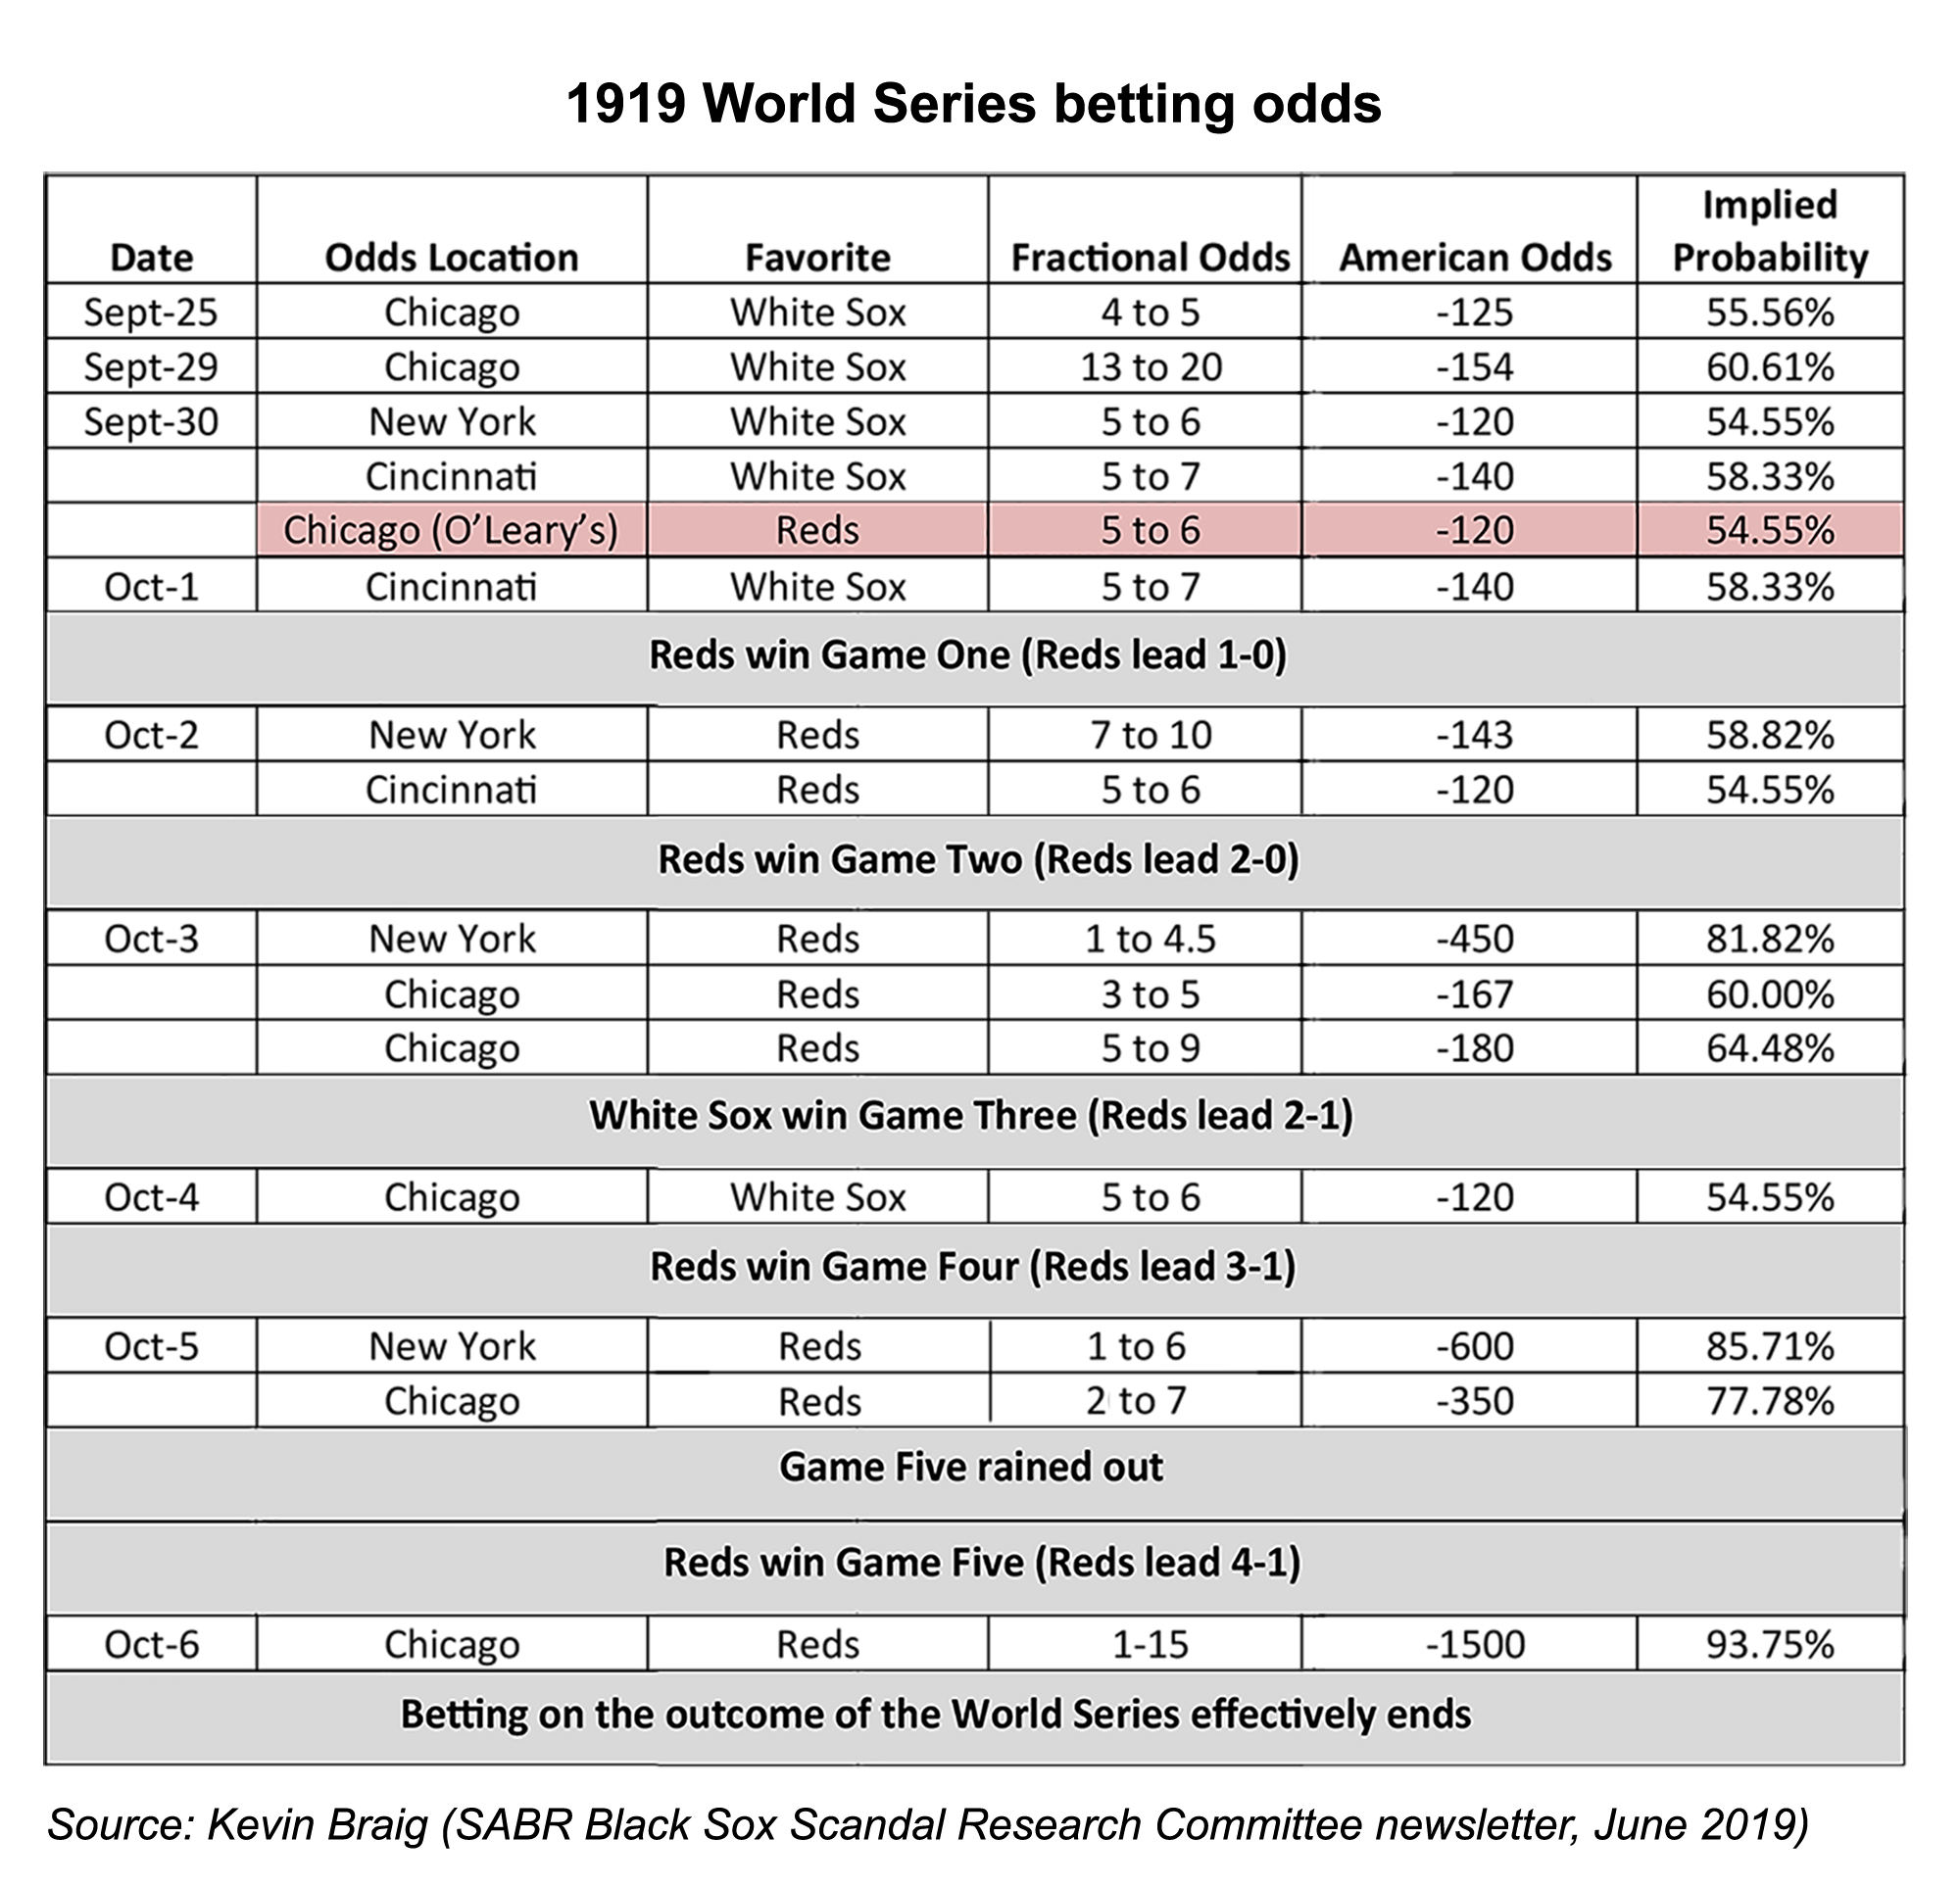 1919 World Series betting odds analysis